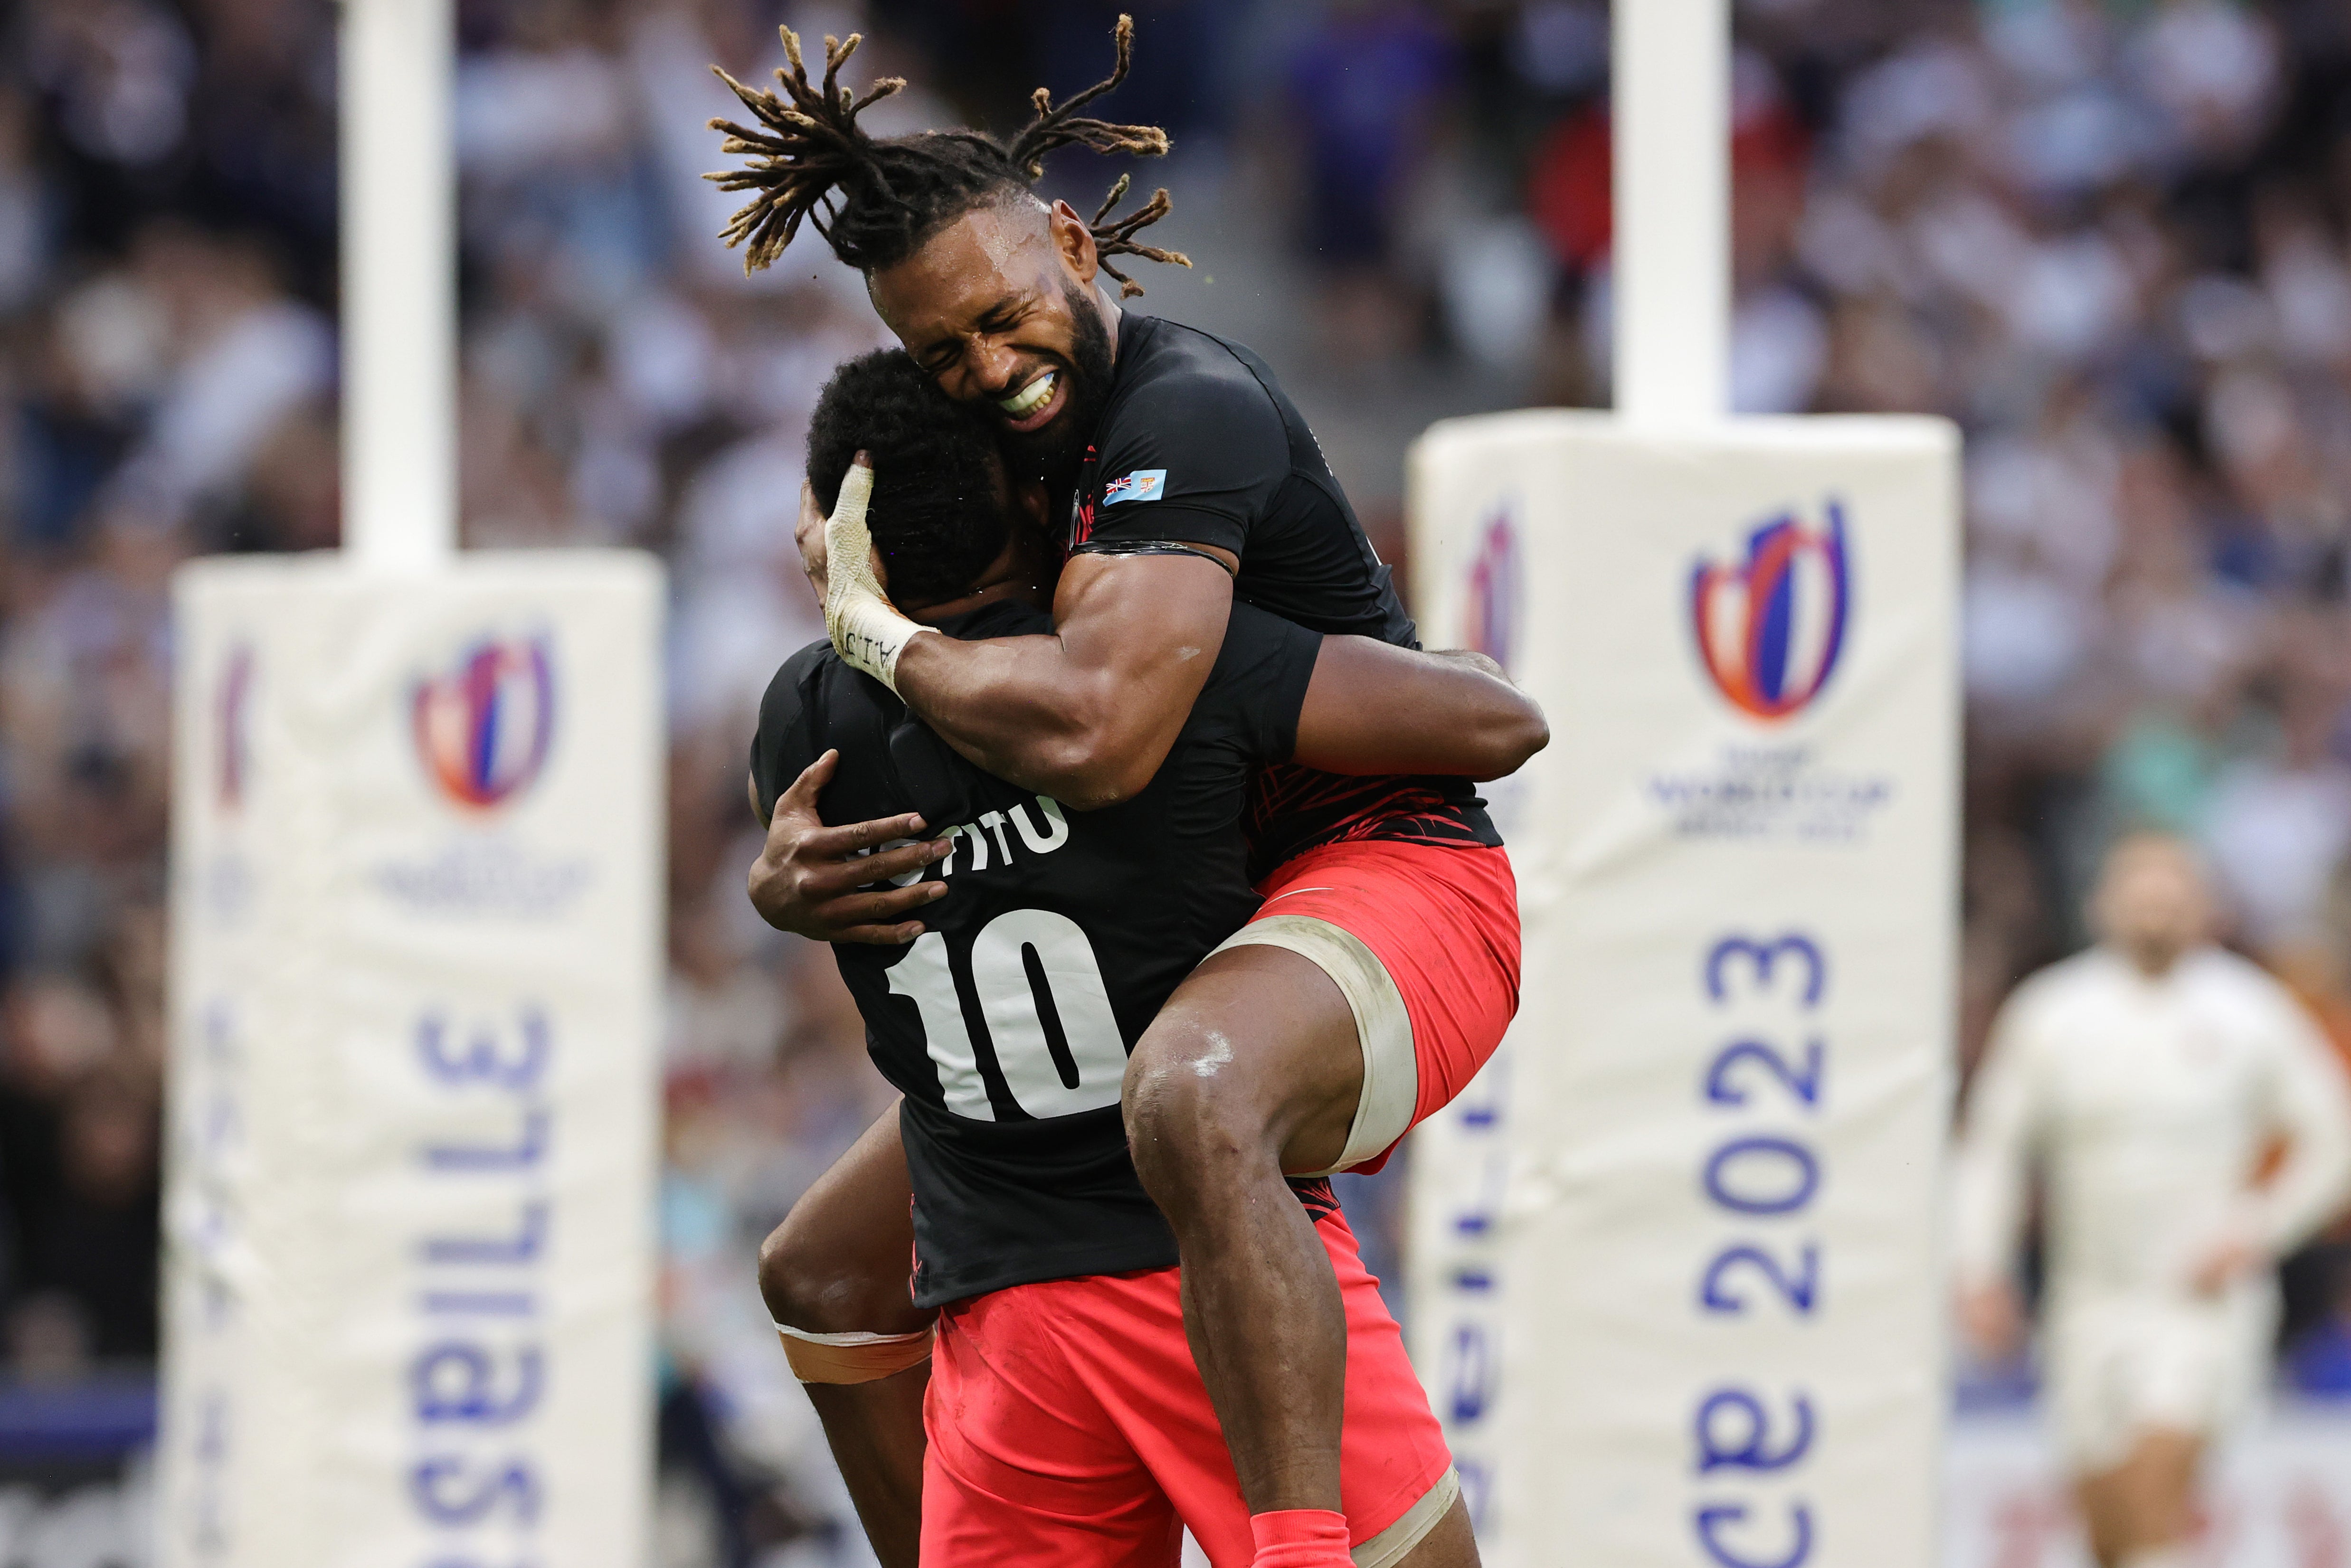 El capitán Waisea Nayacalevu abraza a Vilimoni Botitu después de que el medio apertura anotara un try contra Inglaterra.